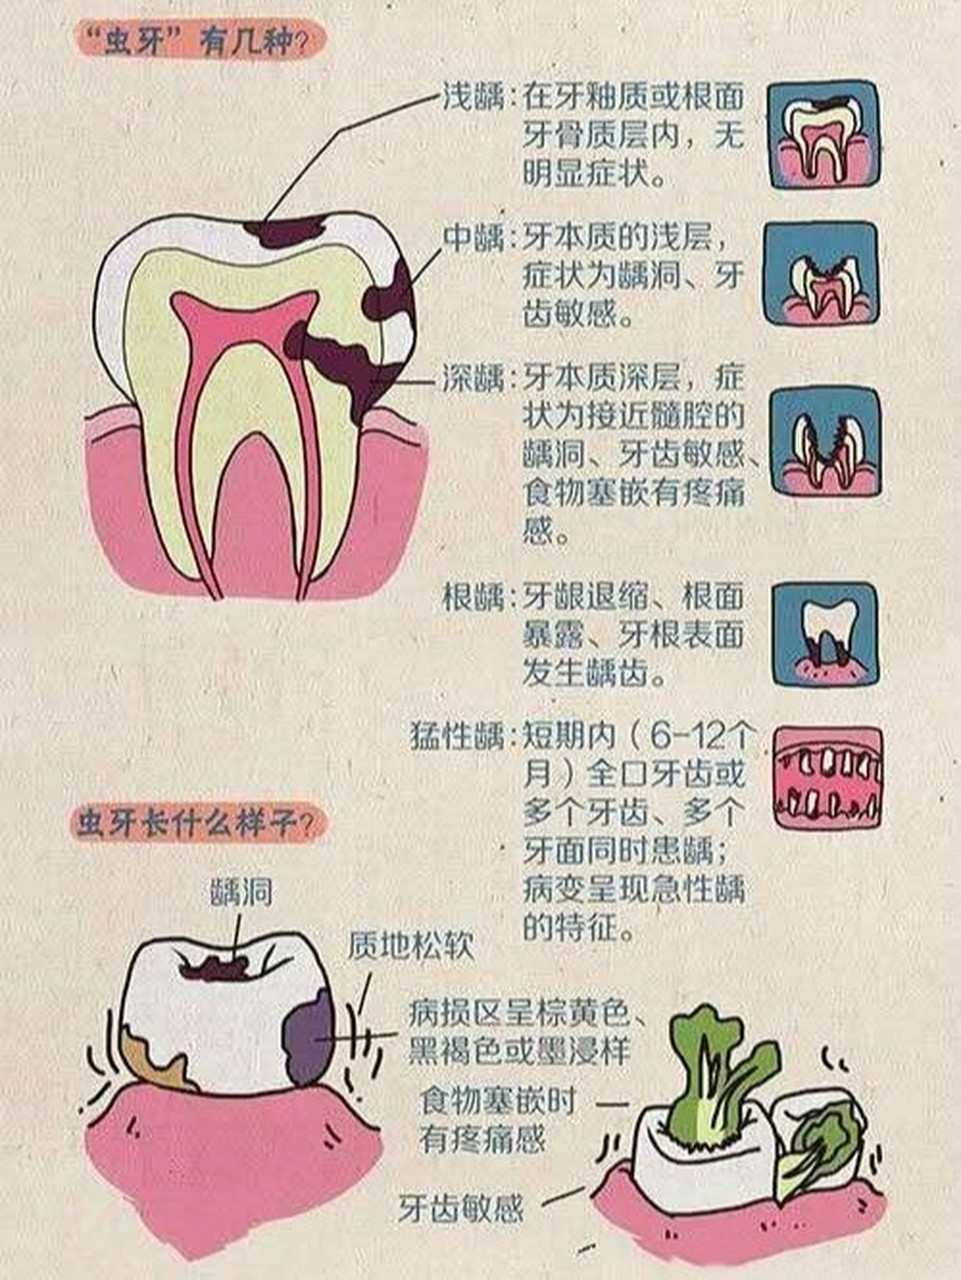 教你肉眼辨别蛀牙的程度 通常蛀牙有三种阶段,各位对号入座 第一阶段